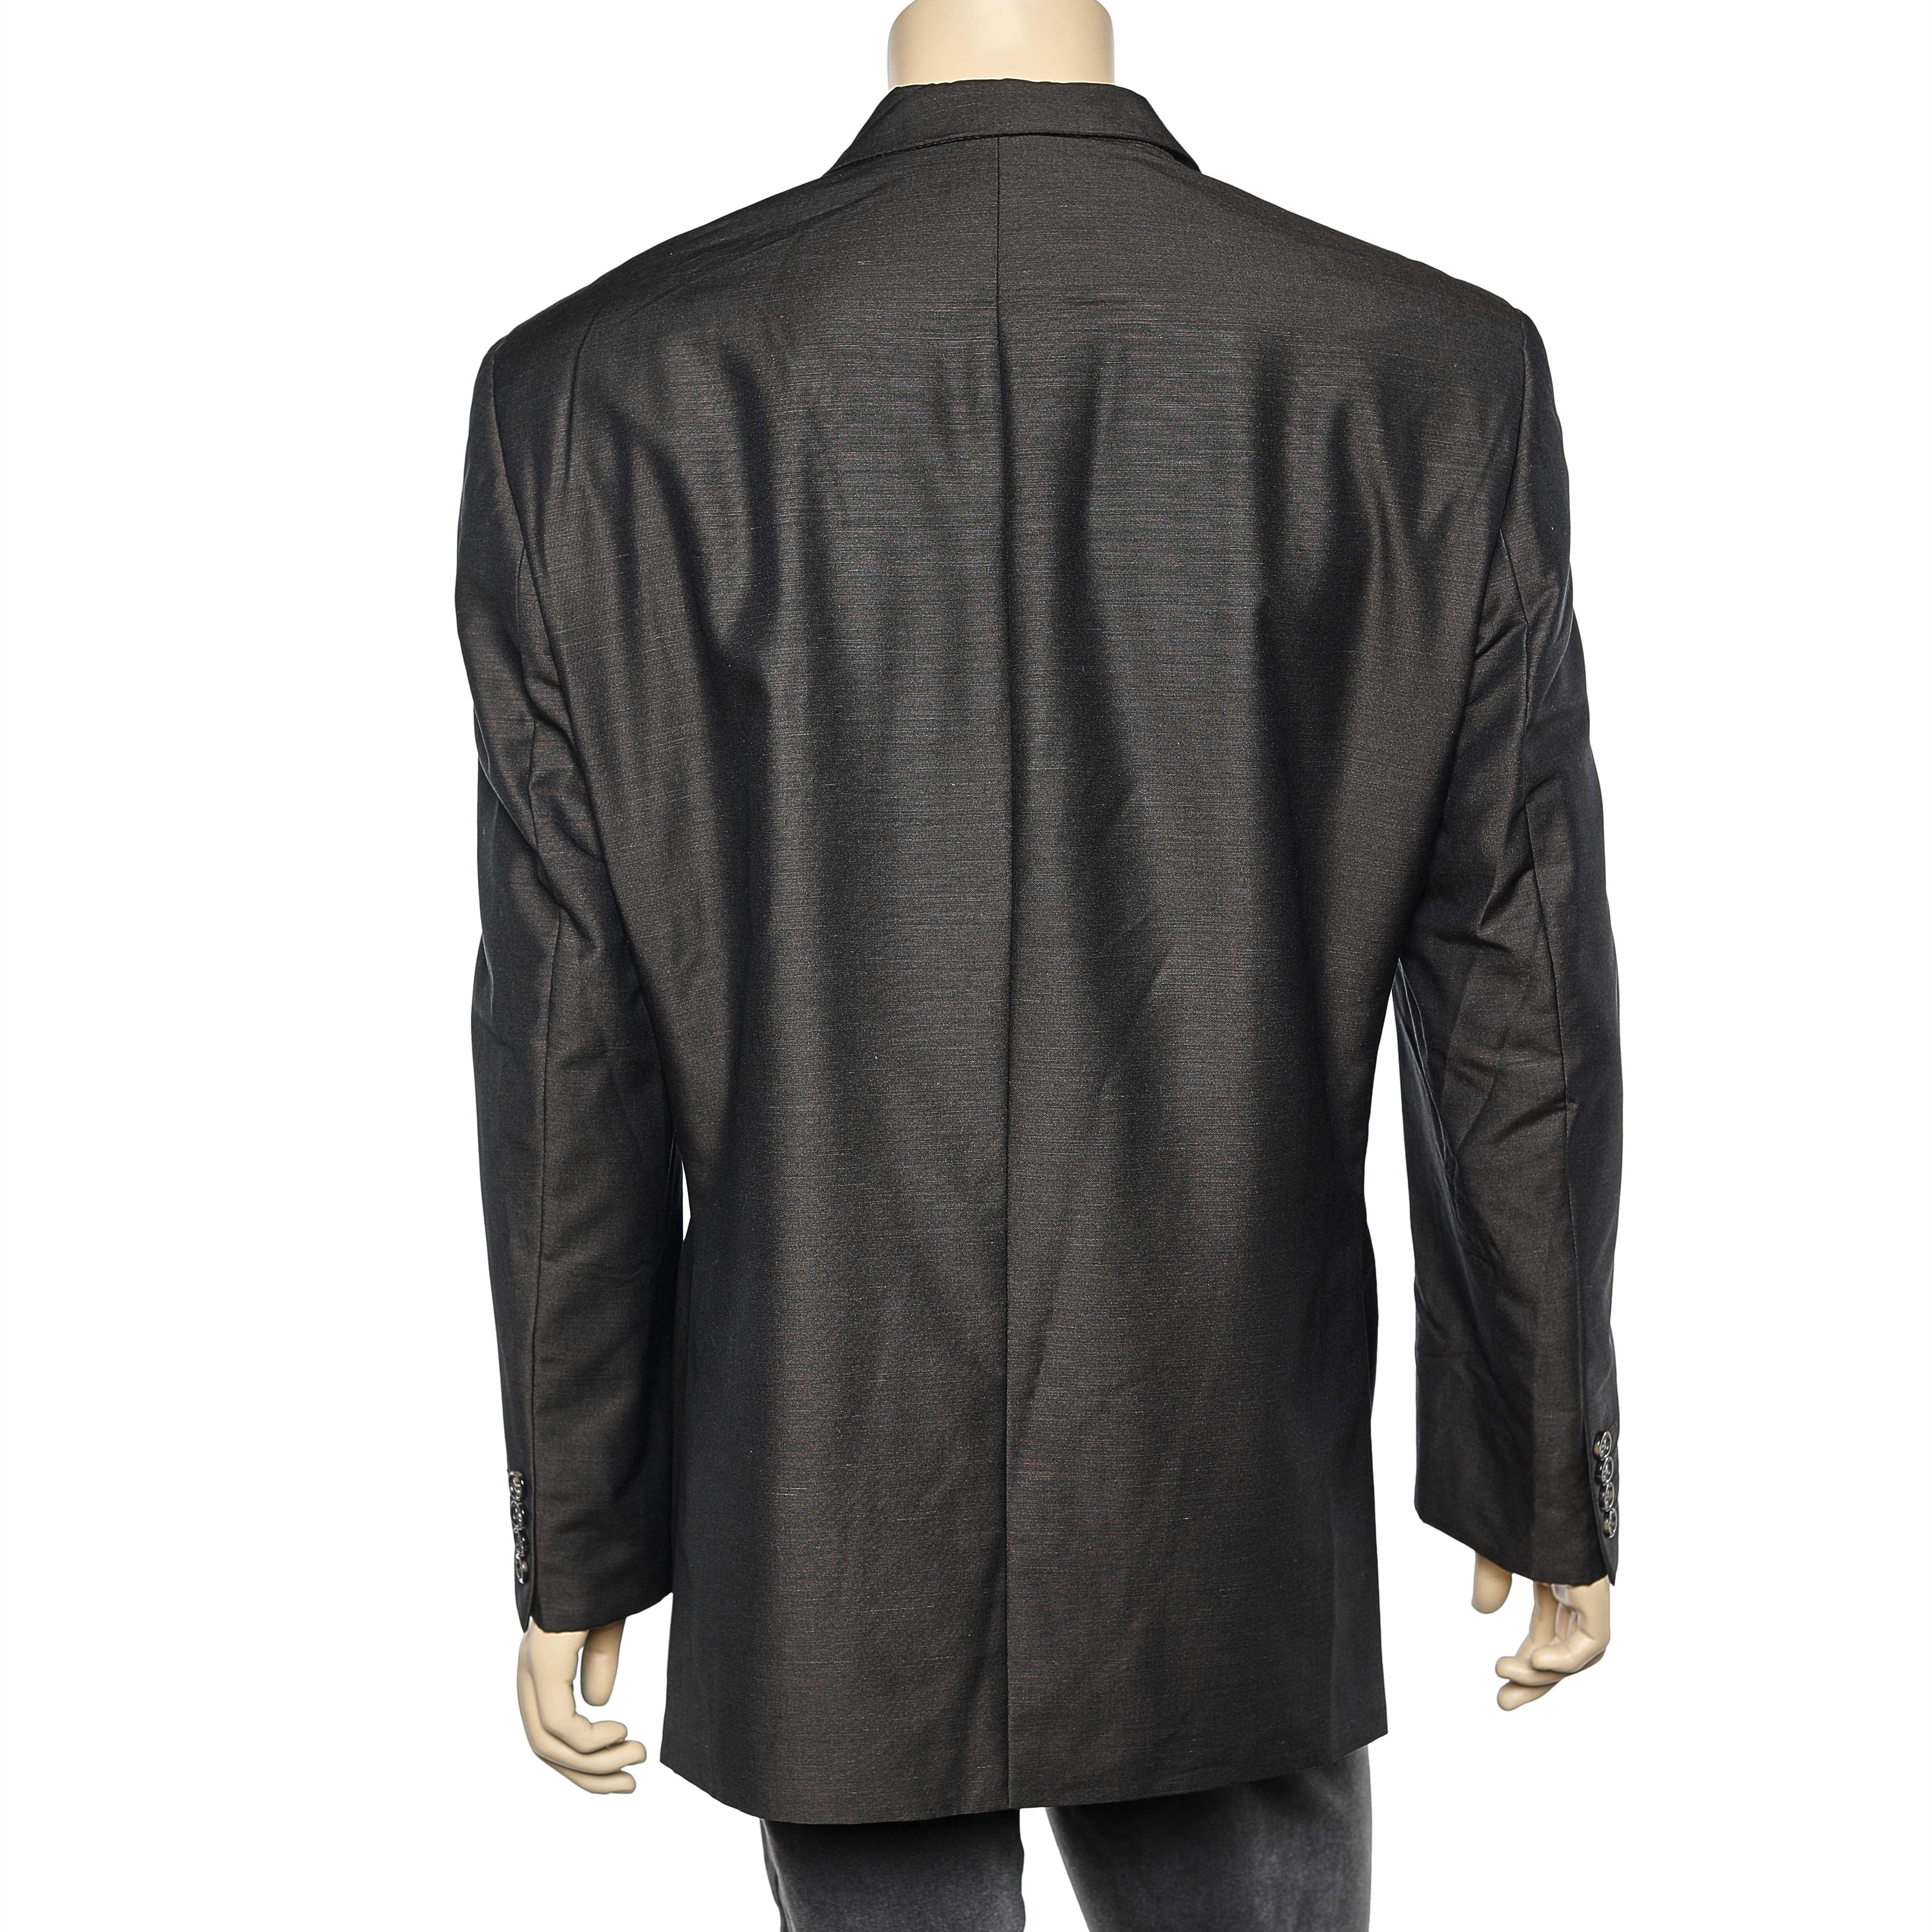 Ce superbe blazer de la maison Yves Saint Laurent vient enrichir votre collection de vêtements de soirée. Conçu dans une luxueuse étoffe de soie et de laine marron, ce blazer est doté d'un devant boutonné et de trois poches. Il est doté de manches